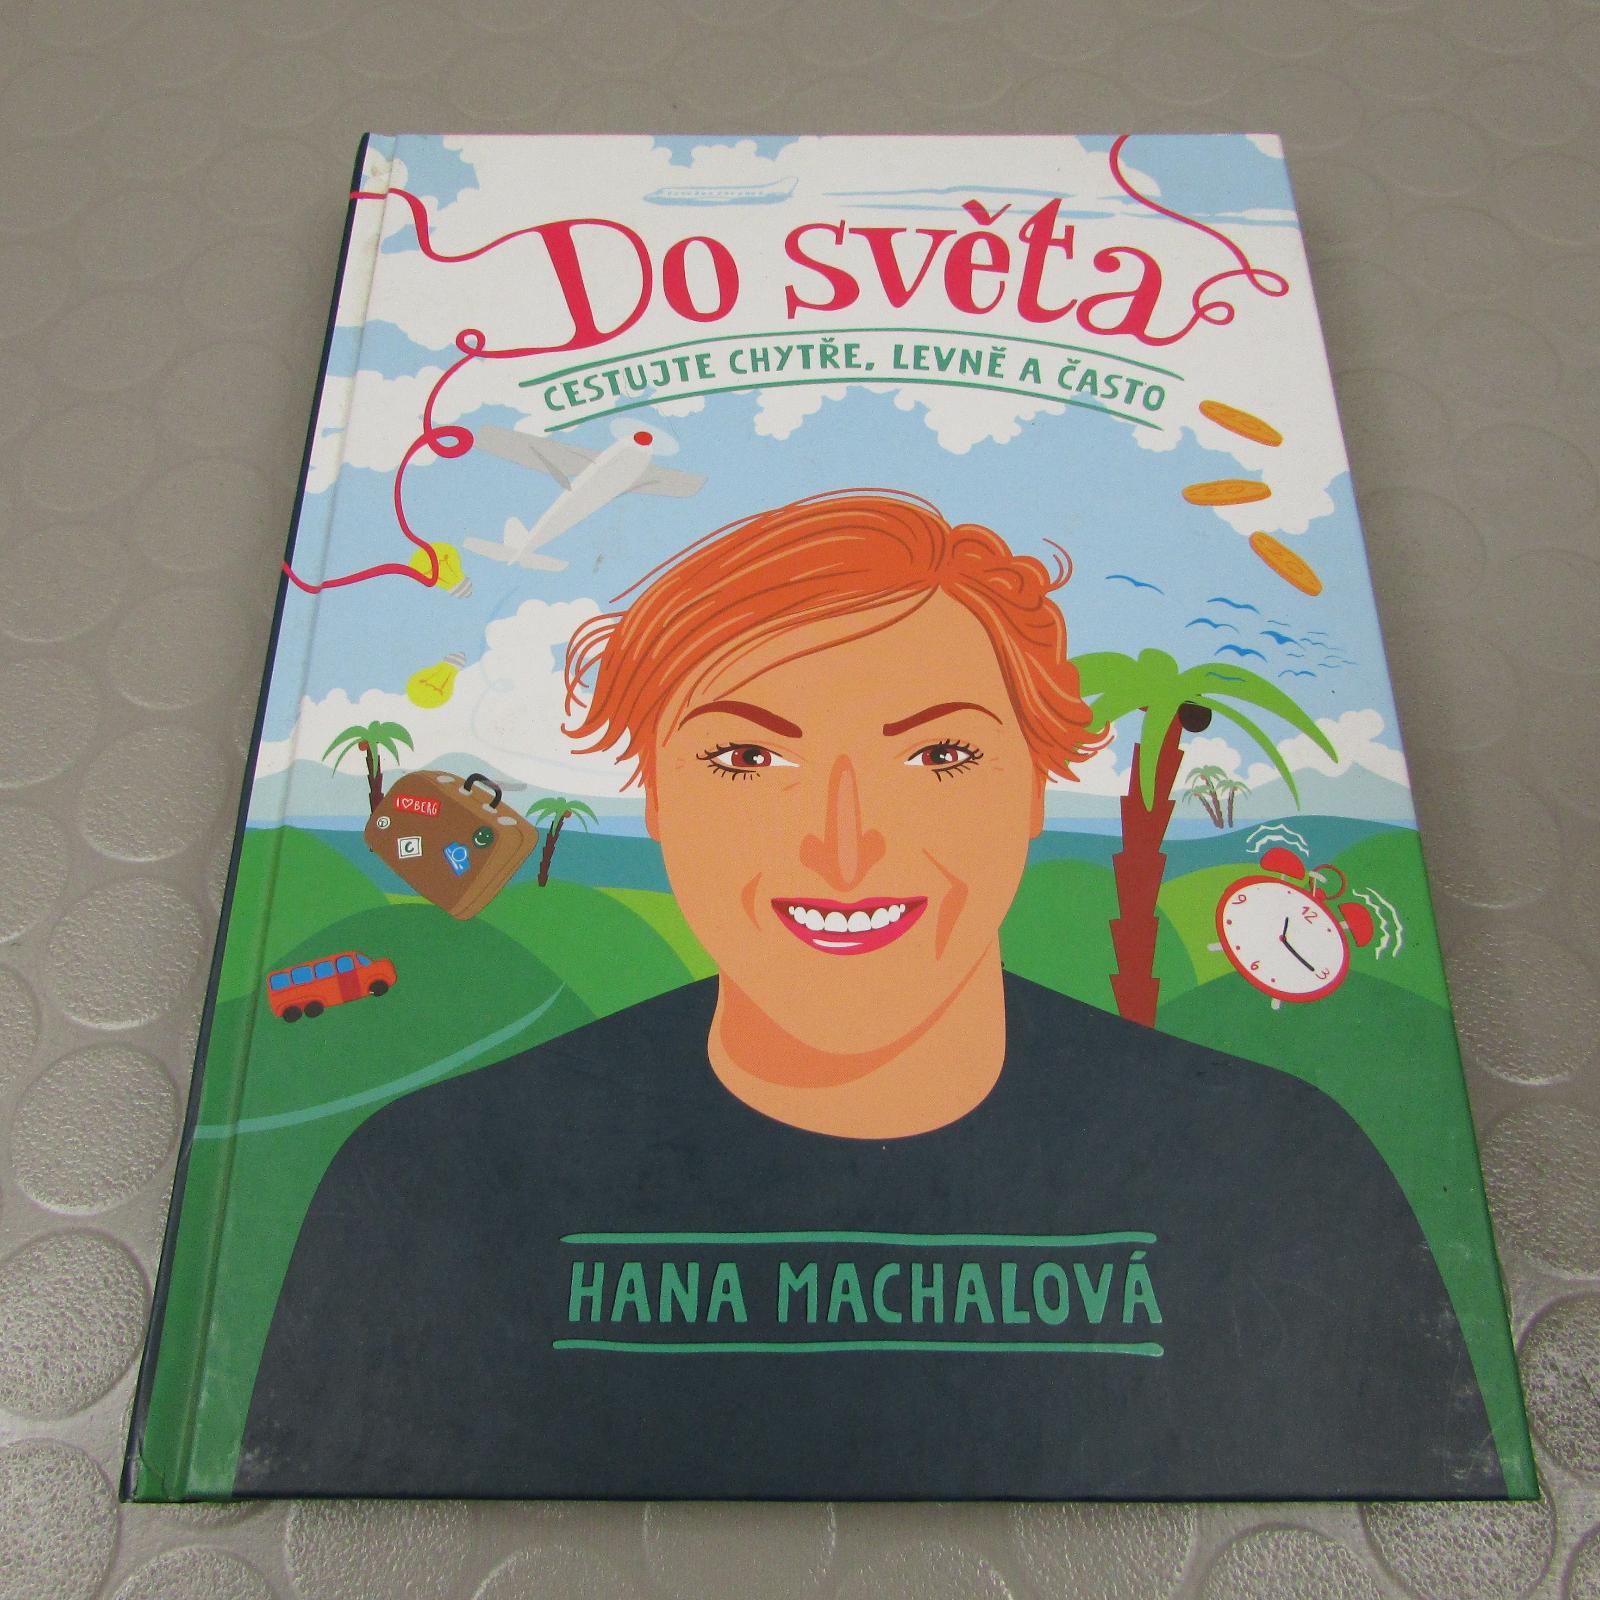 Do sveta Cestujte múdro, lacno a často (190) Hana Machalová - Knihy a časopisy